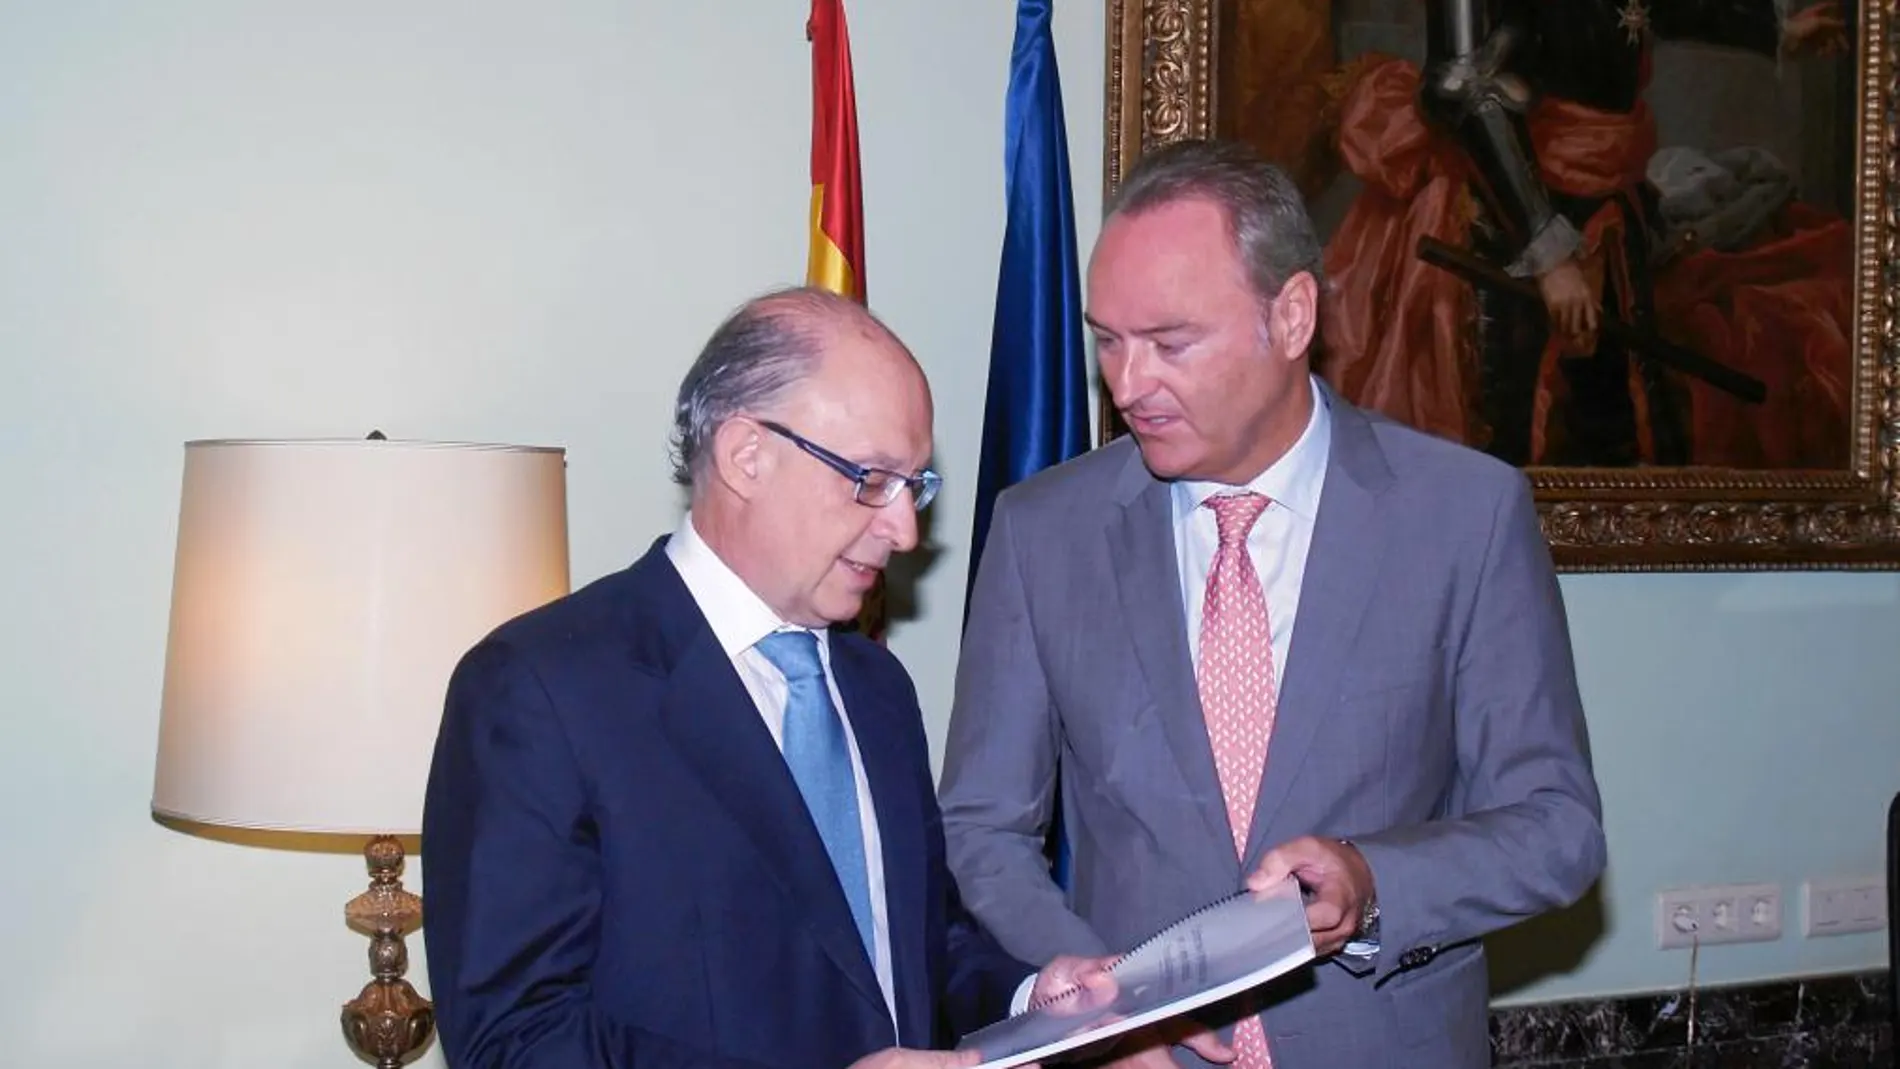 El presidente de la Generalitat conversa con el vicepresidente, Císcar y el conseller de Hacienda, Vela, ayer en Les Corts